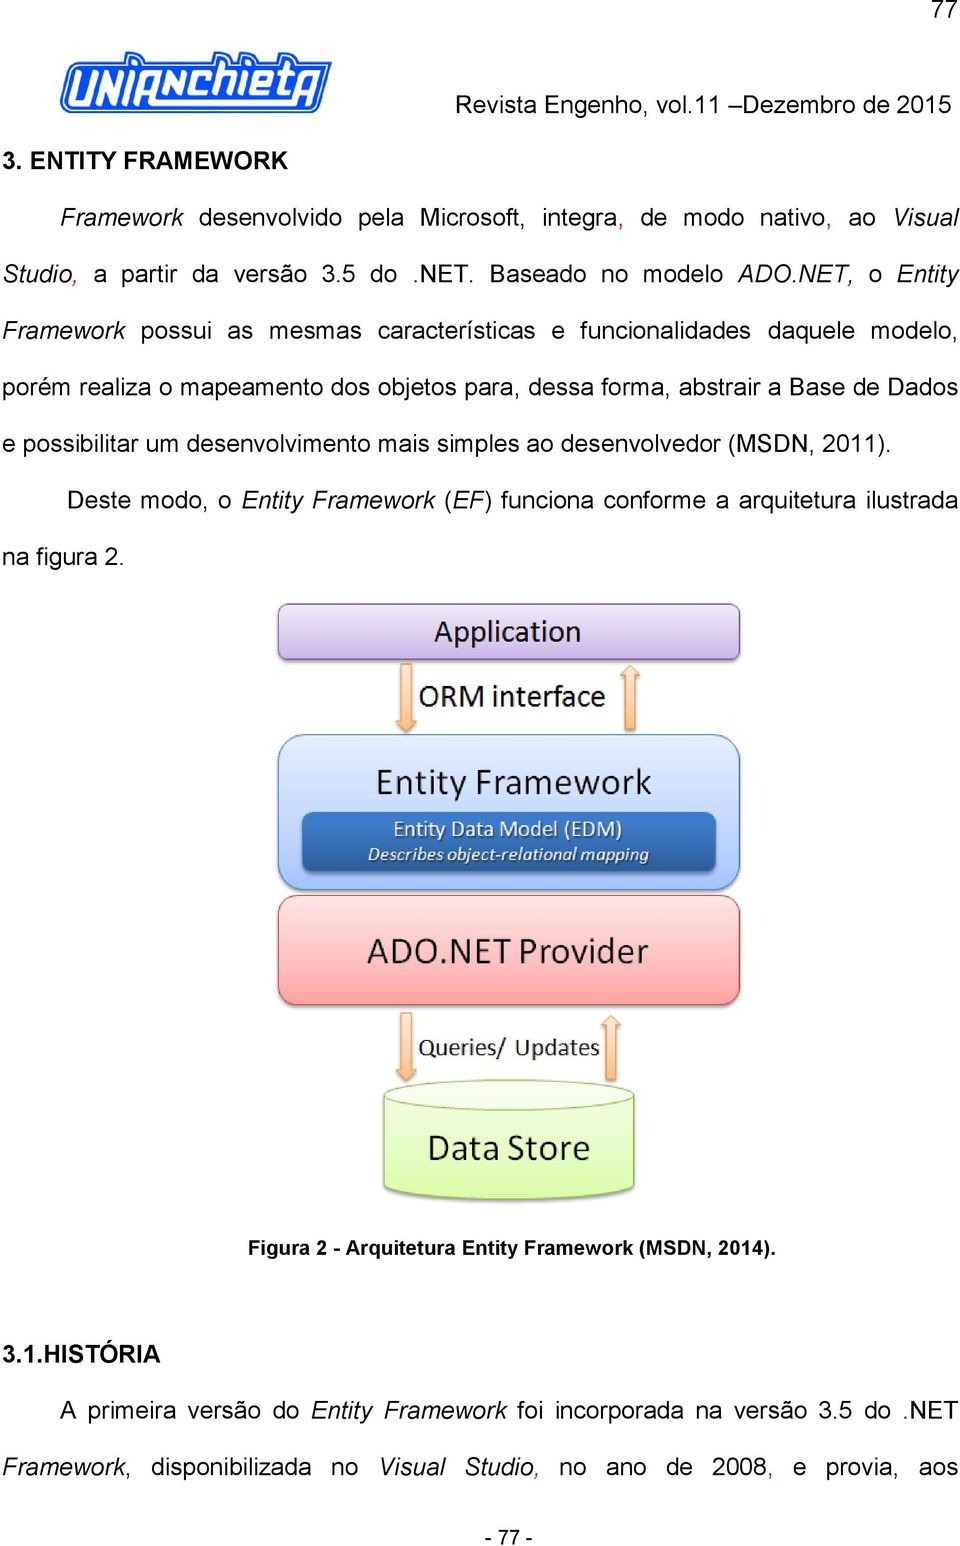 possibilitar um desenvolvimento mais simples ao desenvolvedor (MSDN, 2011). Deste modo, o Entity Framework (EF) funciona conforme a arquitetura ilustrada na figura 2.